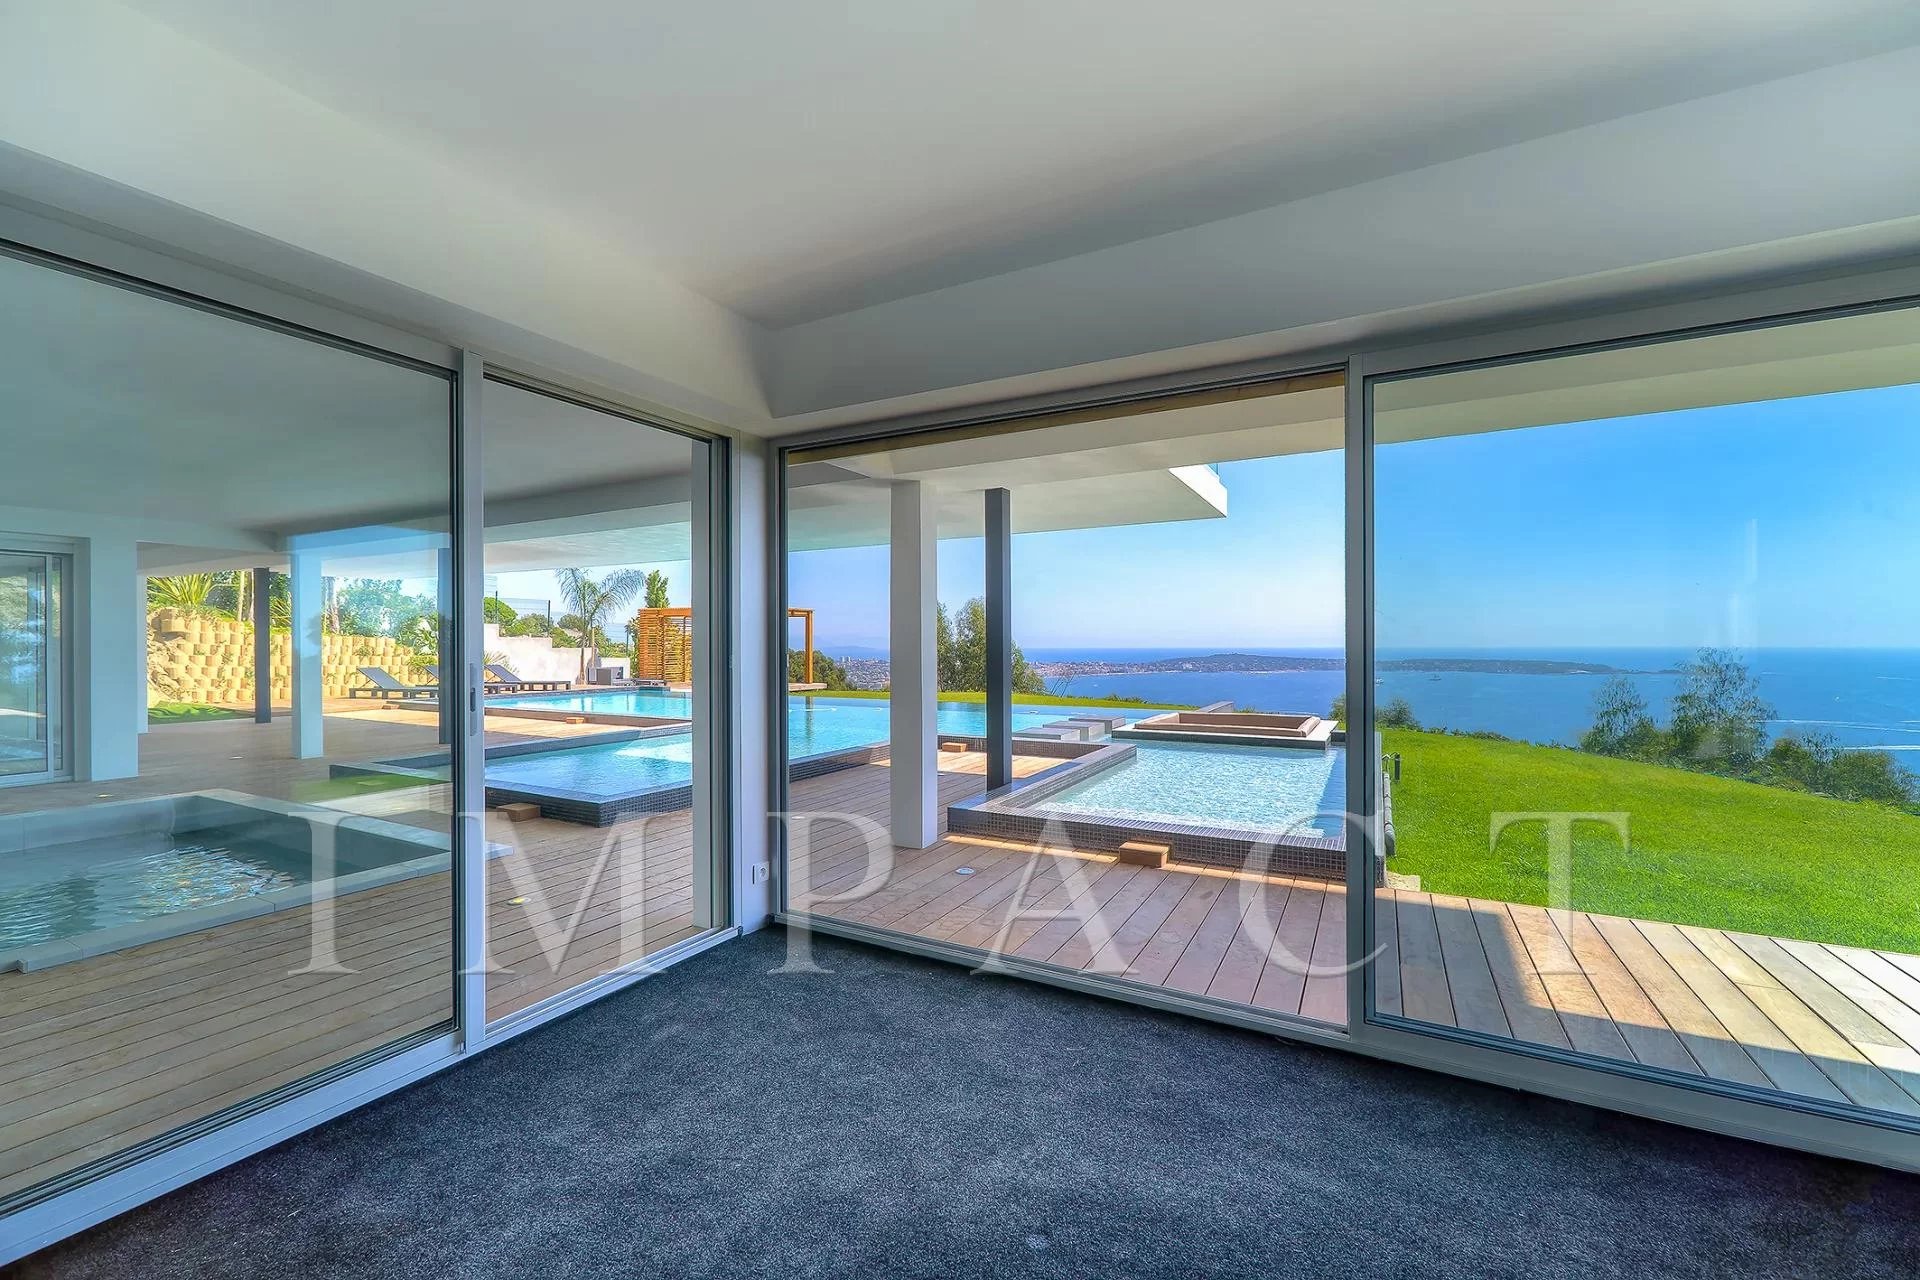 Super Cannes - Architect's villa with sea view